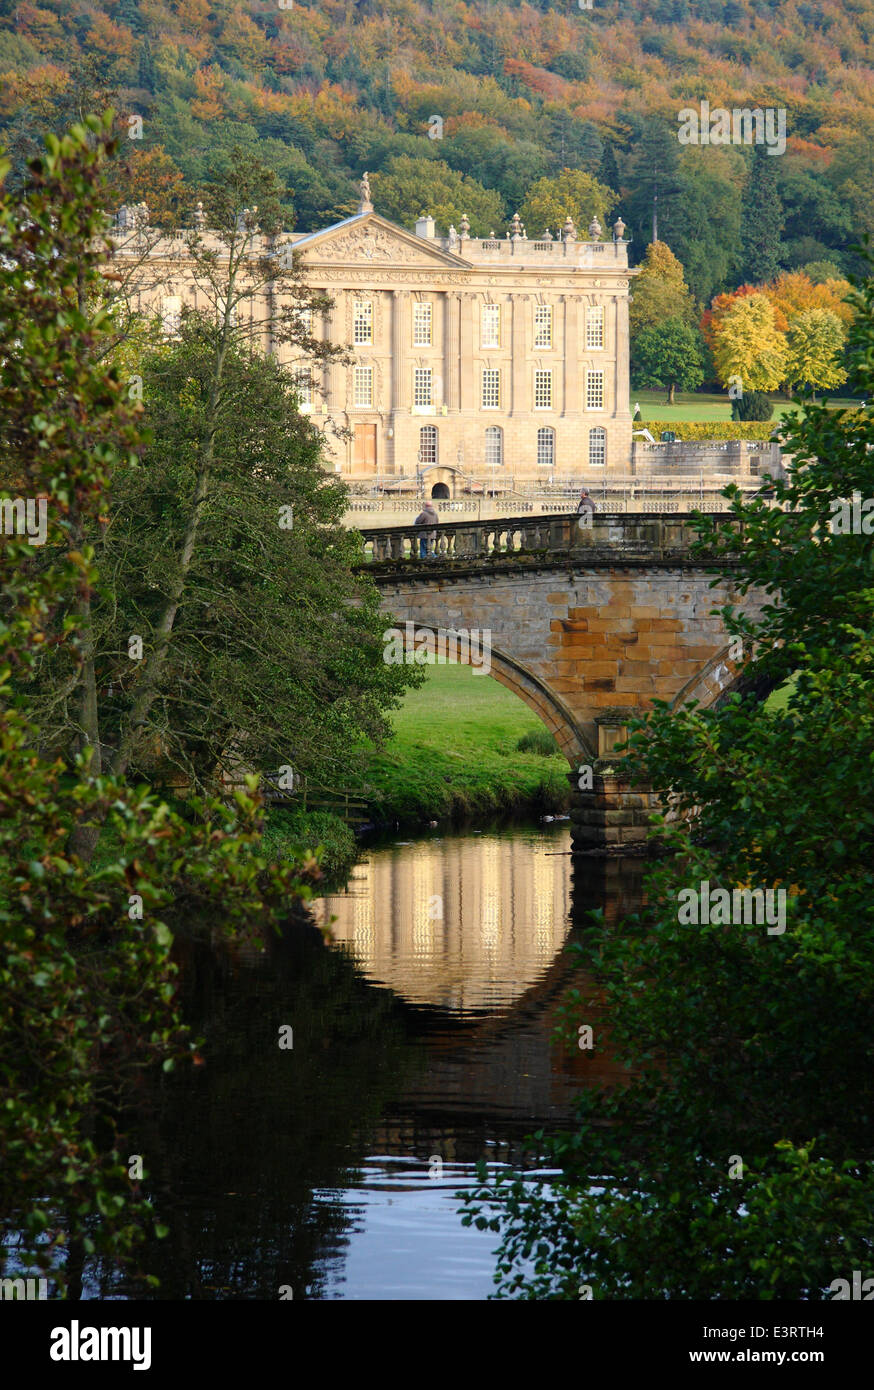 Il fiume Derwent fluisce dalla Chatsworth House casa nobiliare visto dal libero accesso al parco, Peak District, England, Regno Unito - autunno Foto Stock